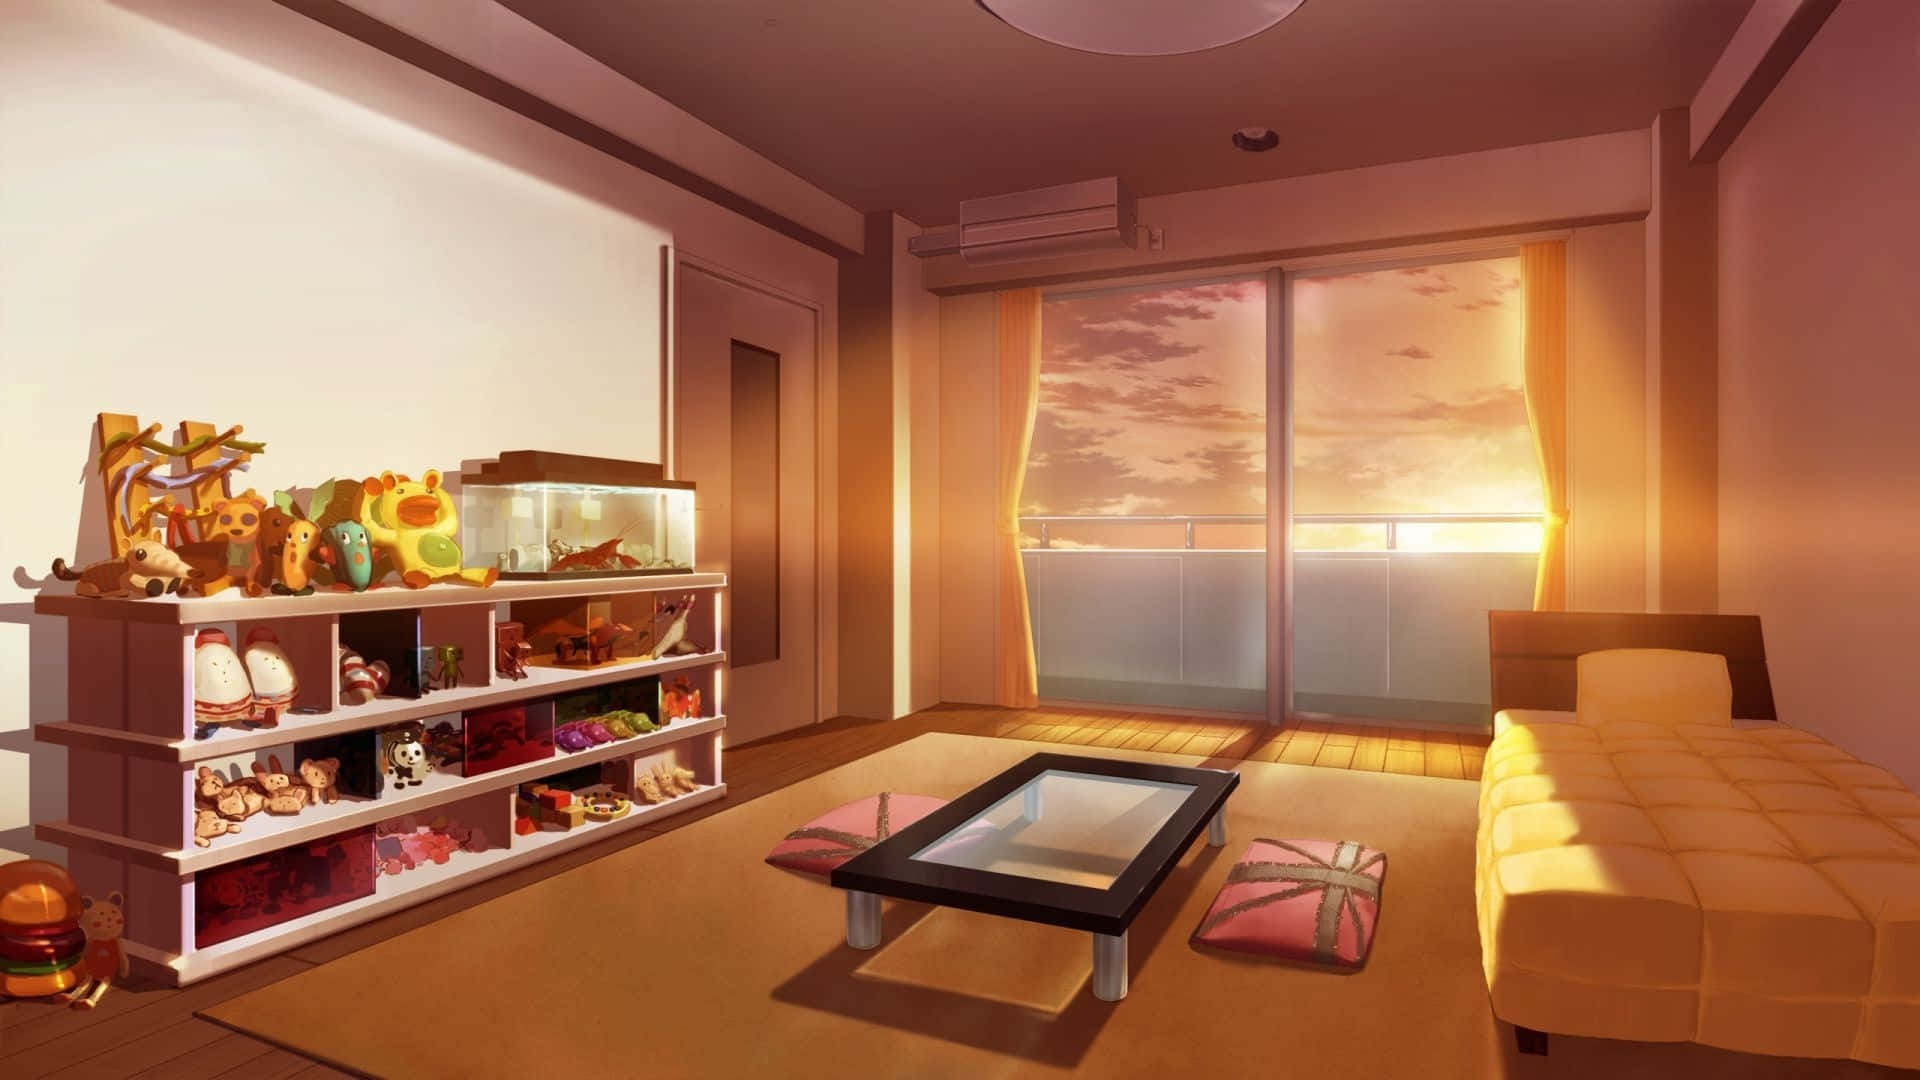 Inviterdig Selv Ind I Dette Hyggelige Anime-soveværelse Og Få Fyldt Dig Med Spænding!